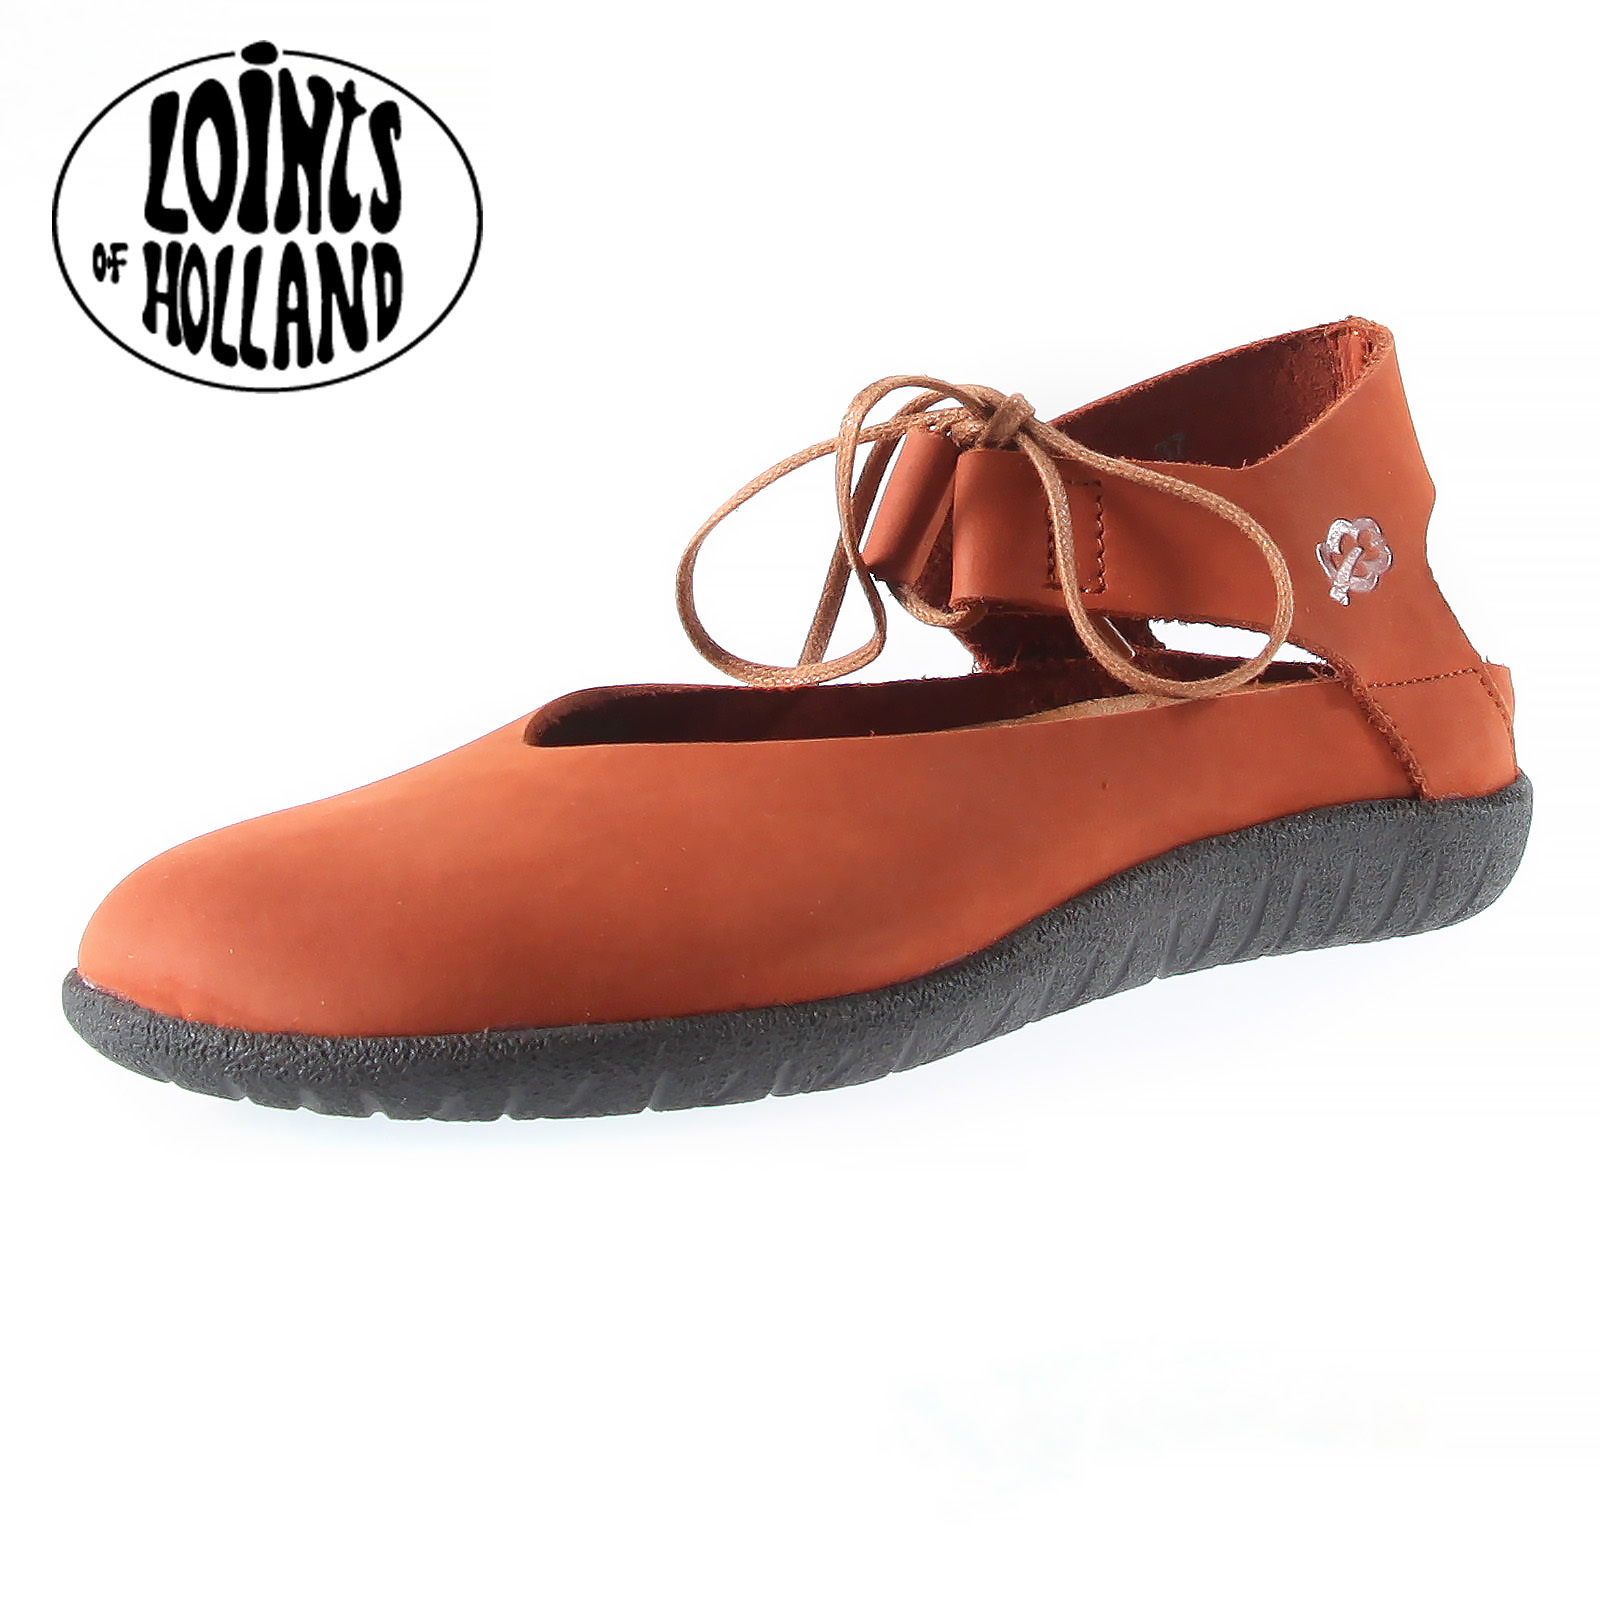 binnen Auto spons Bunde schoen in Brick roodbruin van Loints of Holland